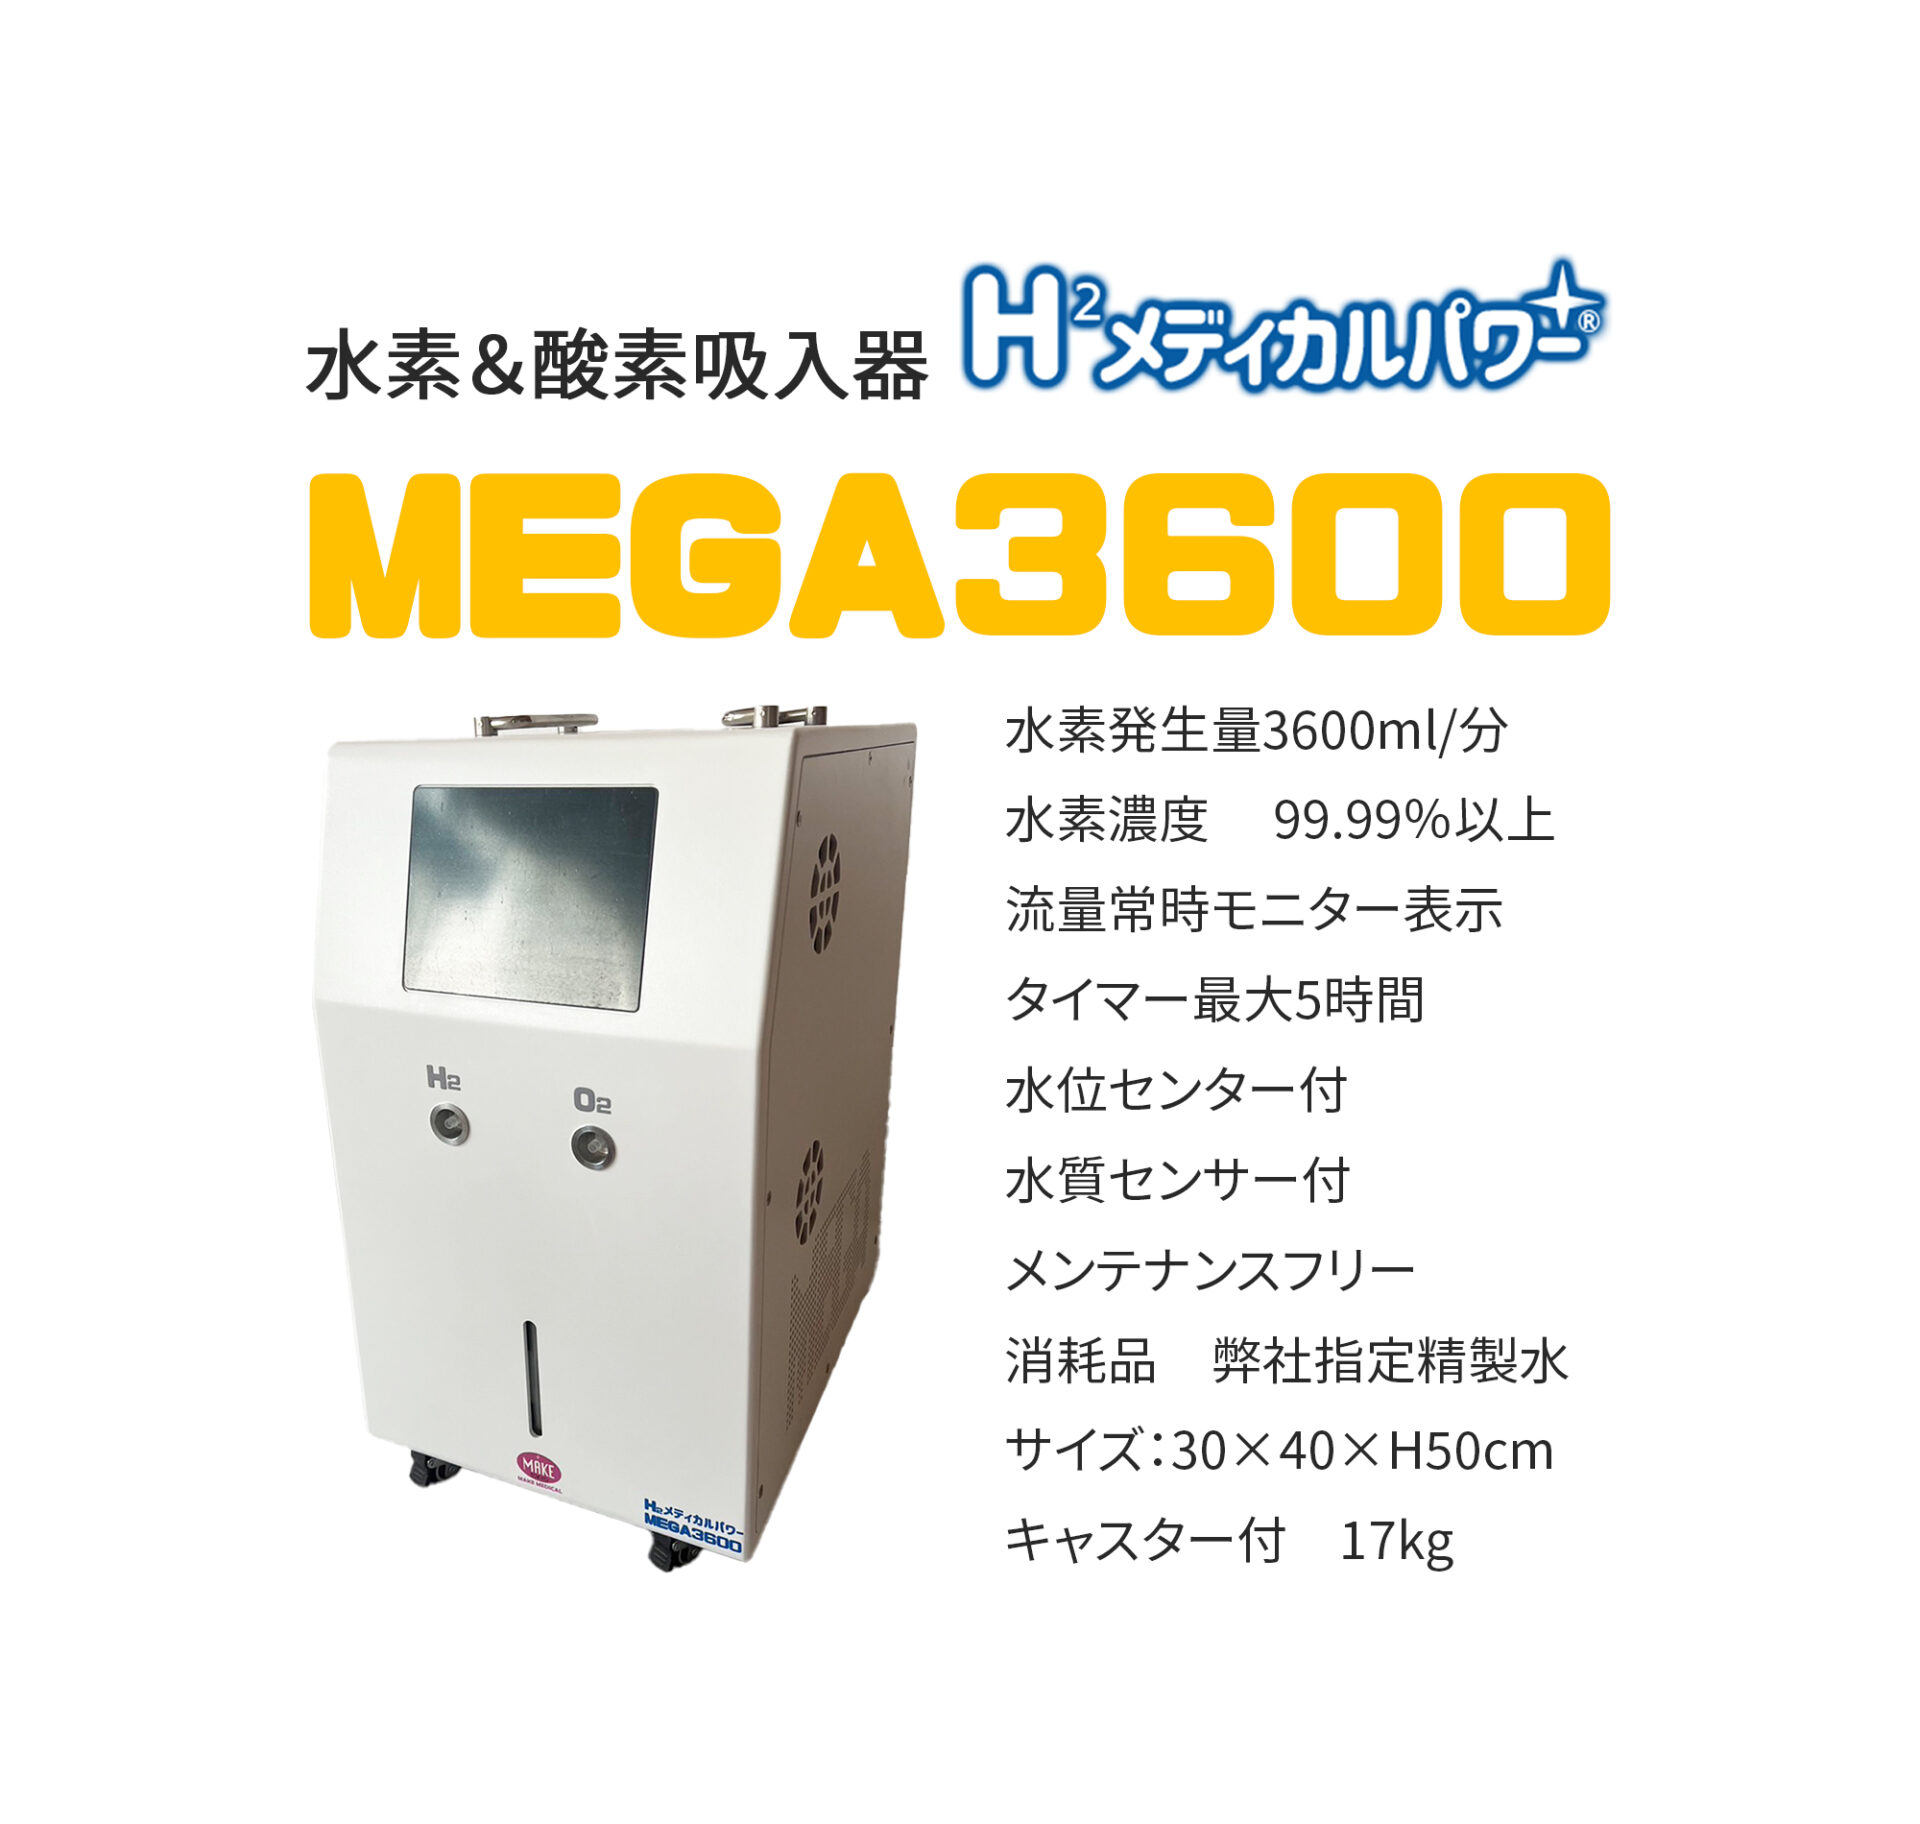 MEGA3600